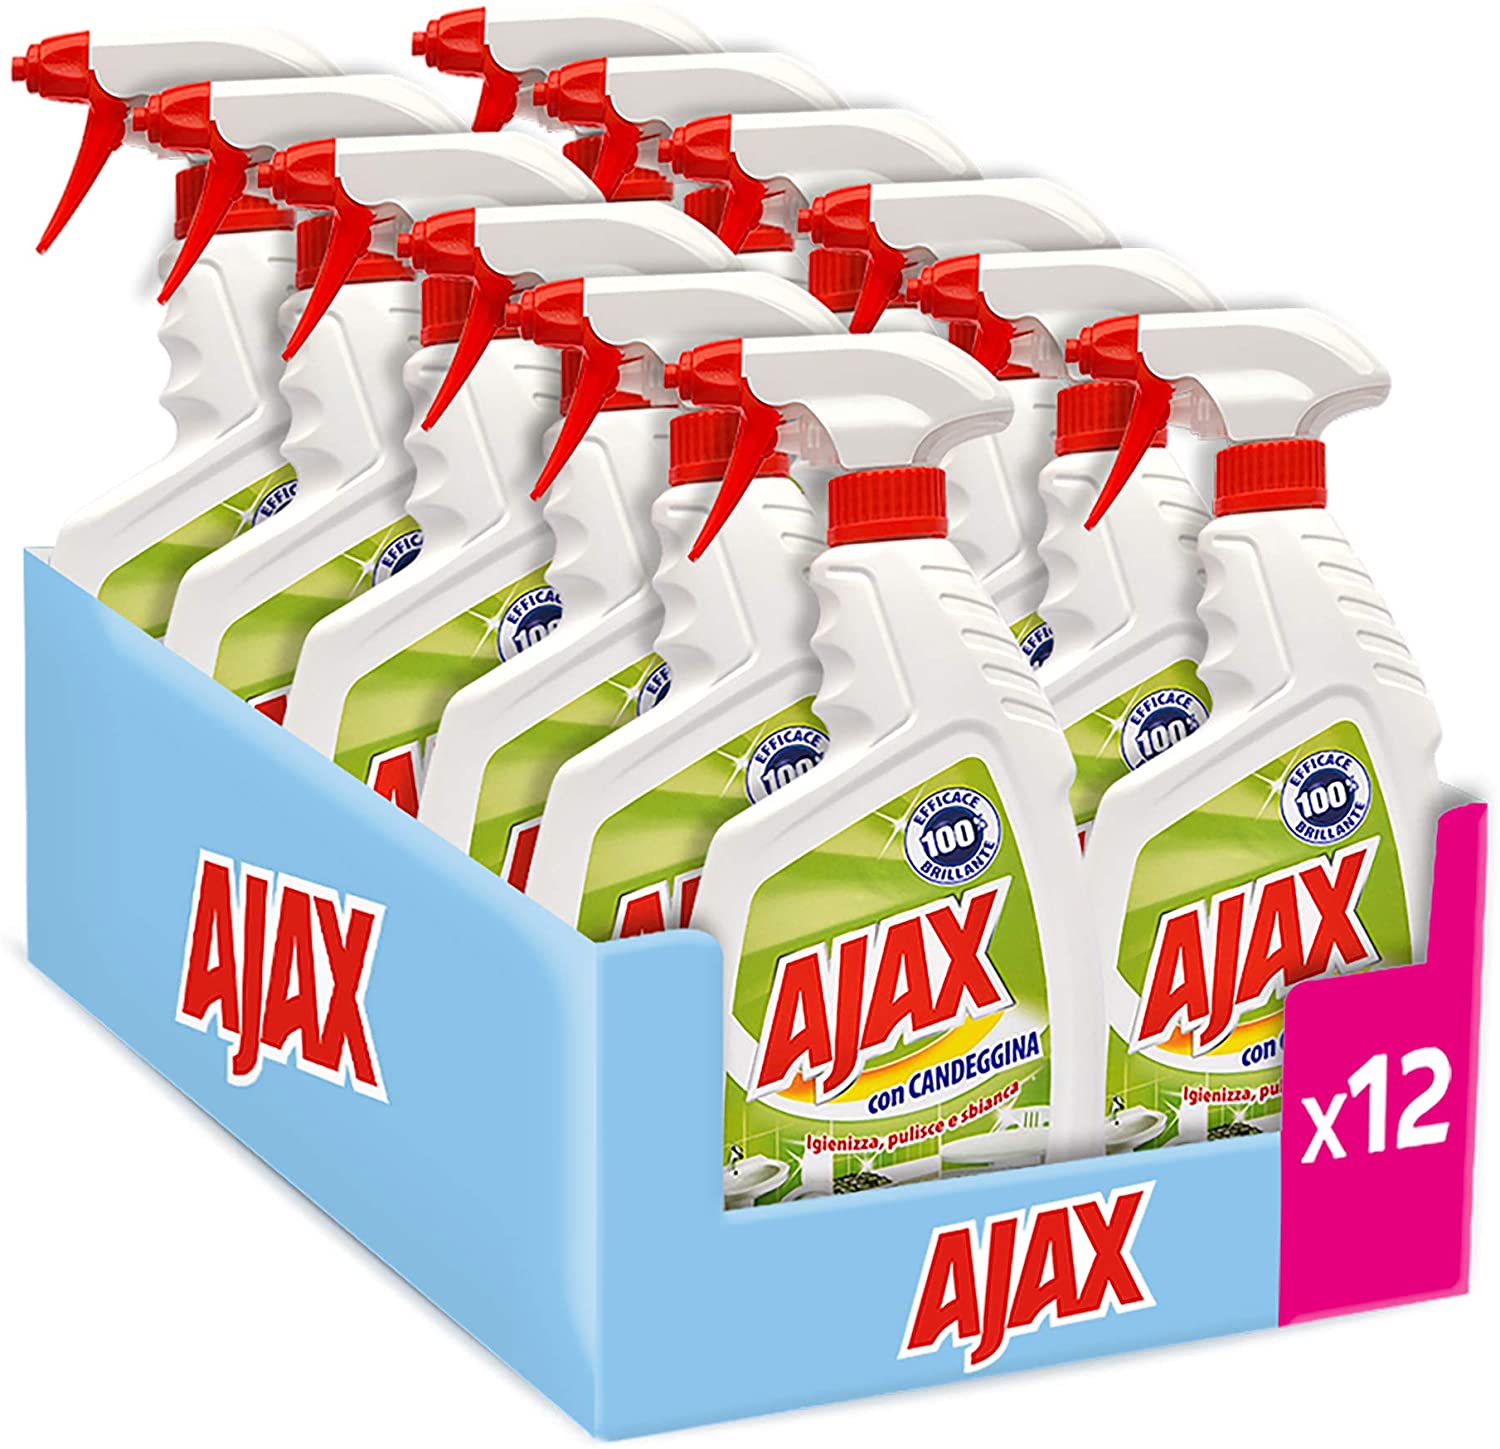 AJAX, Spray Con Candeggina 2 in 1: Igienizza, Pulisce e Sbianca, 100%  Efficacia e Brillantezza, Agente Antibatterico - 12 Flaconi Da 750 ml -  Biostaff